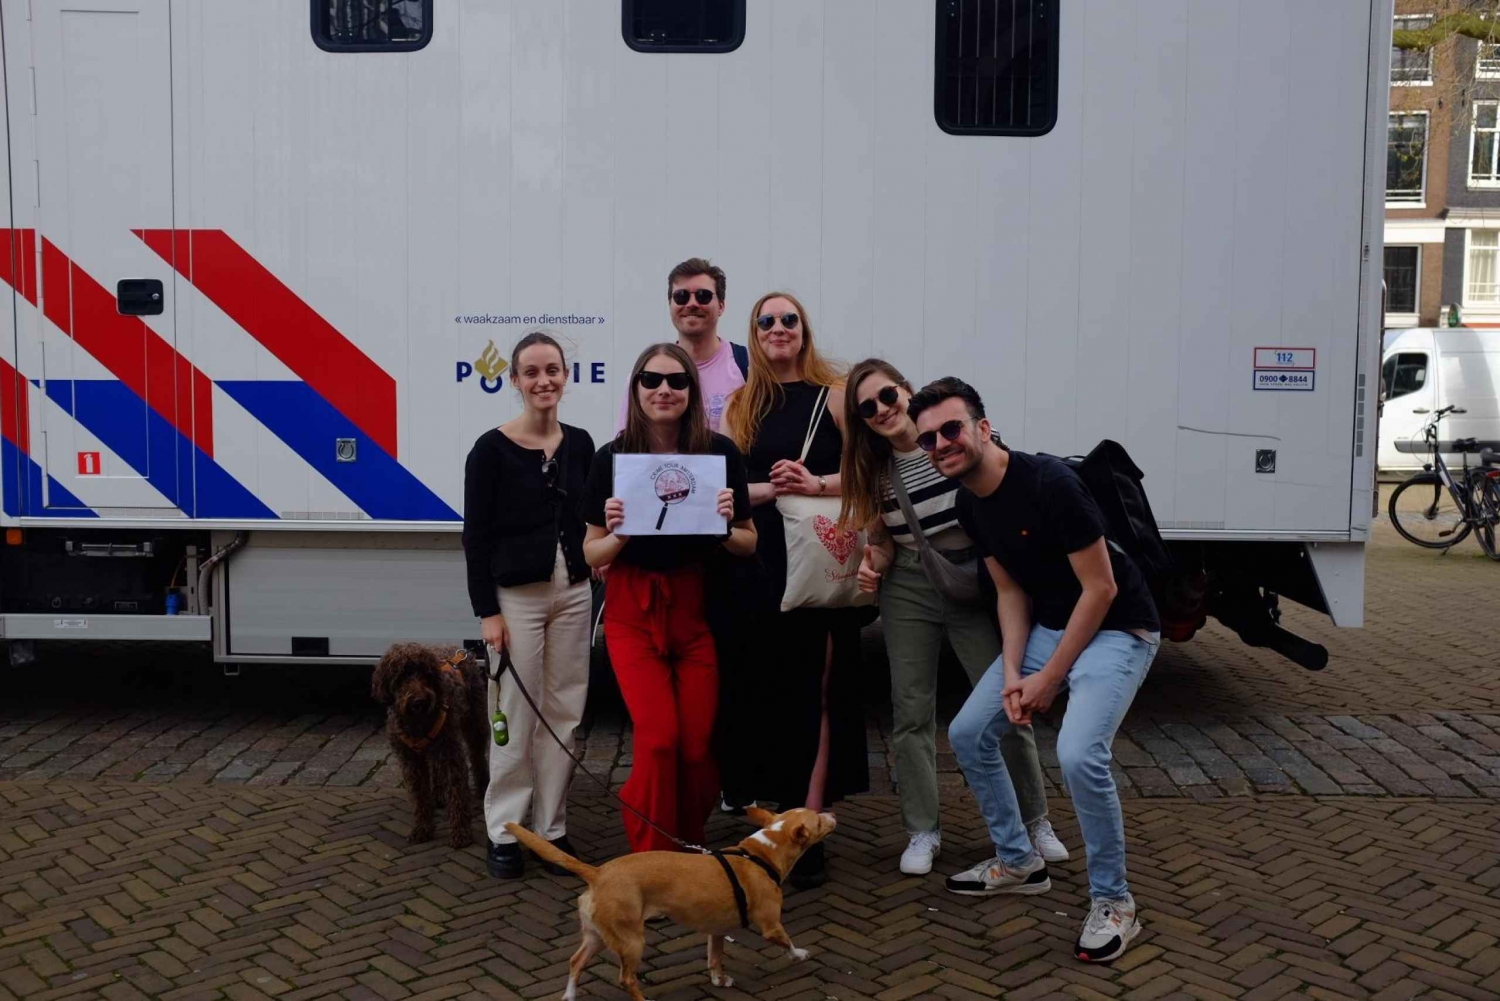 Crime Tour Amsterdam: Ontdek de donkere kant van Amsterdam